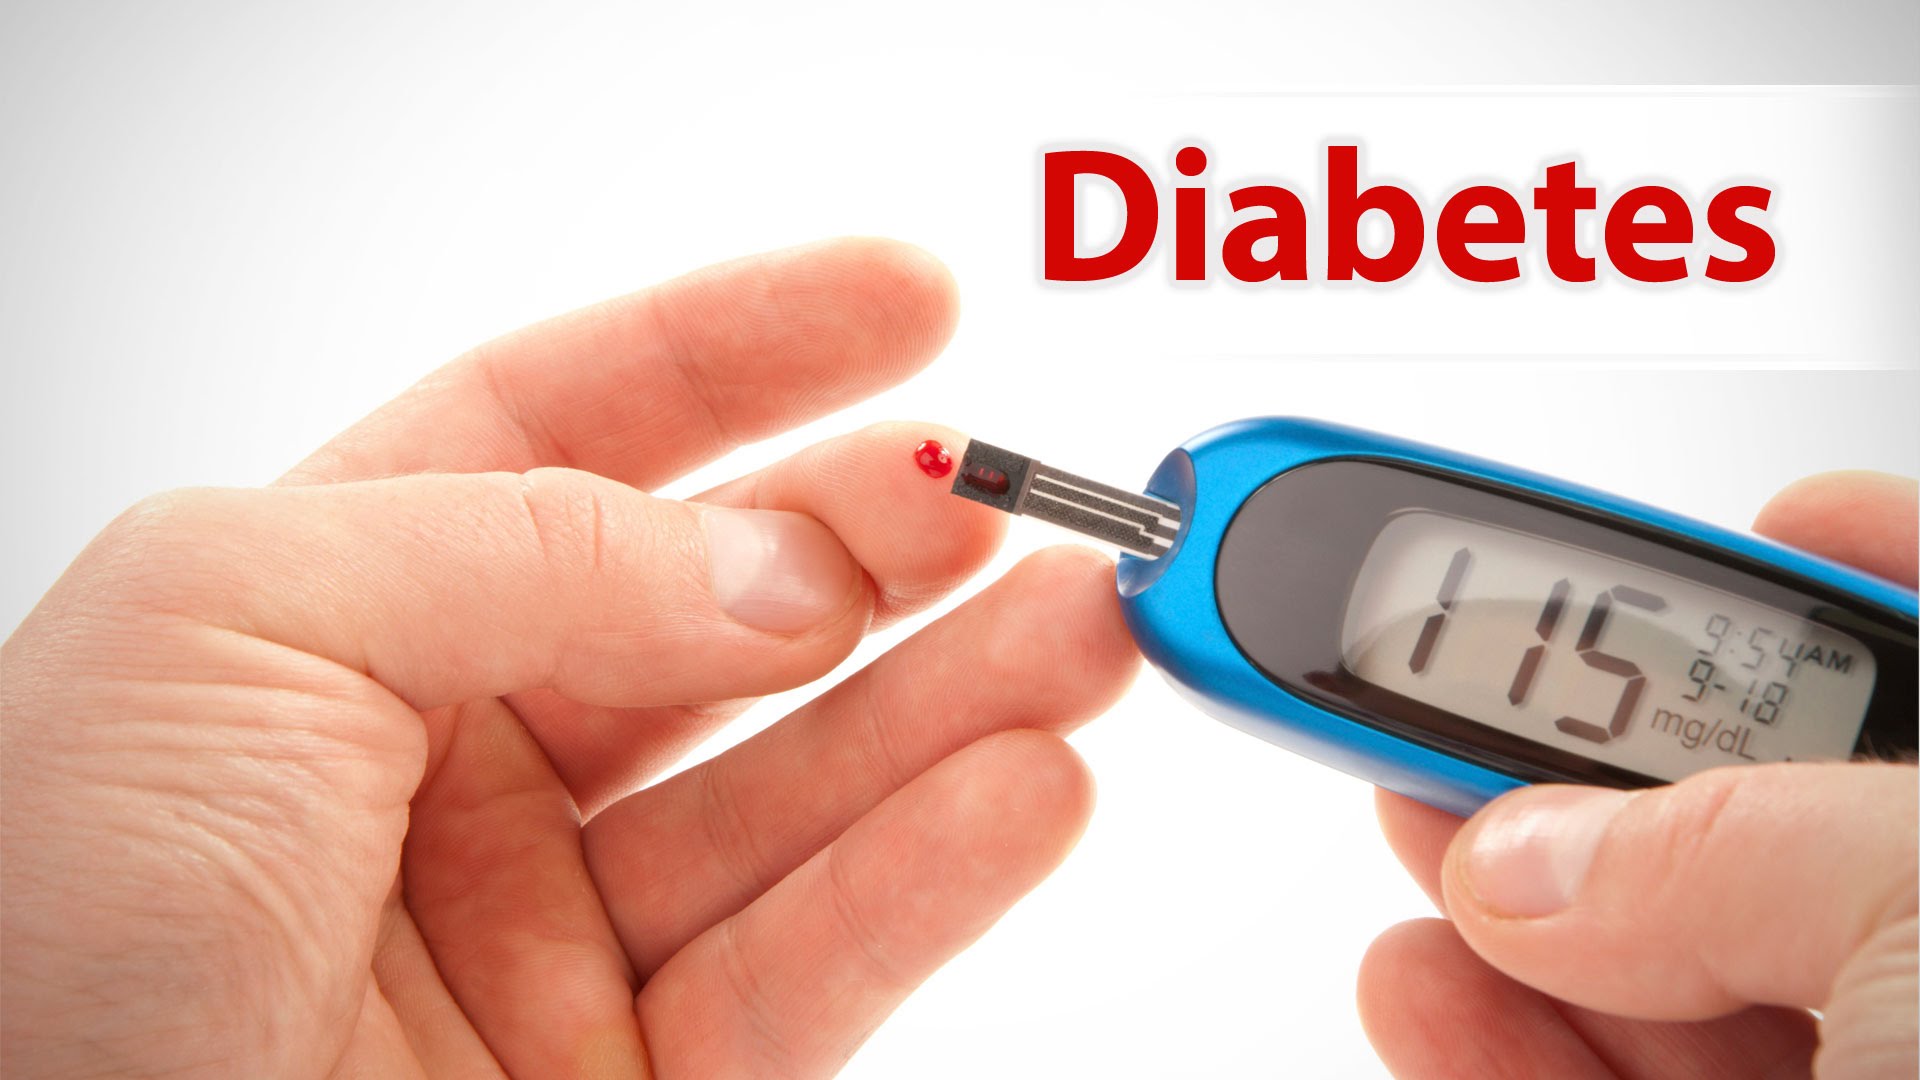 PREVENÇÃO: Prevenção e controle do diabetes é fundamental para reduzir mortalidade